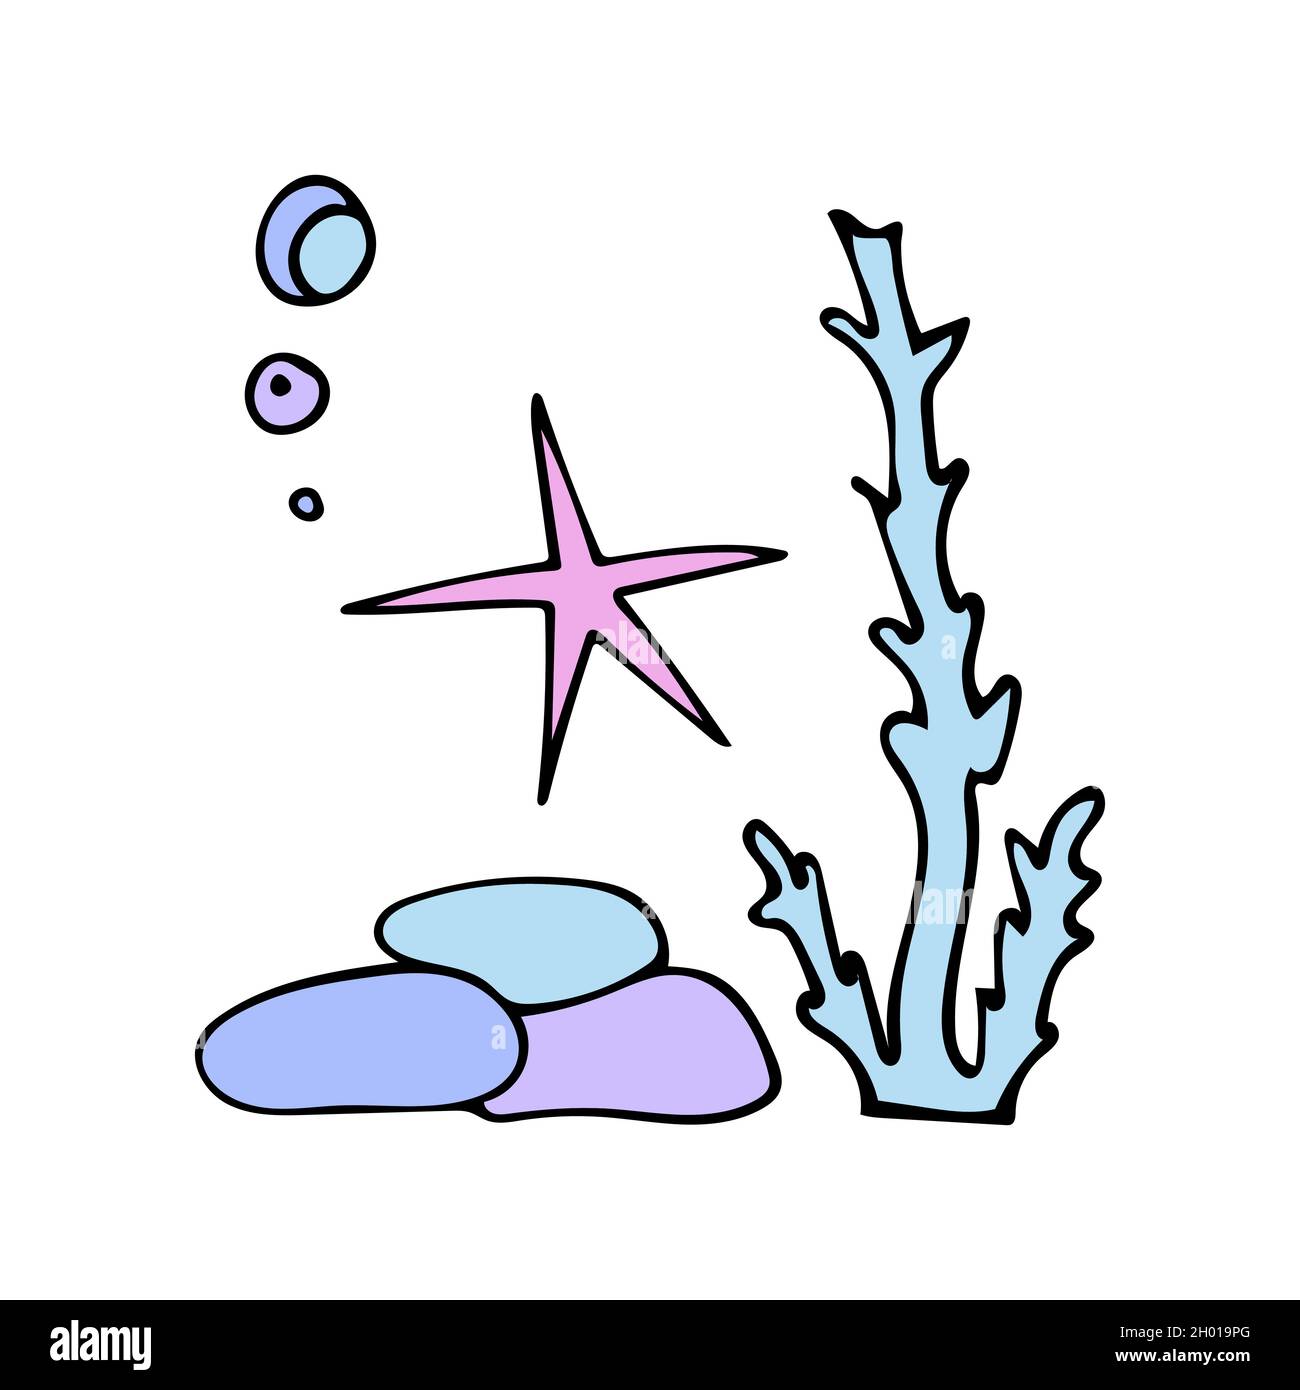 Stelle marine colorate con bolle d'aria vicino alle alghe e alle pietre. Stile Doodle. Illustrazione Vettoriale